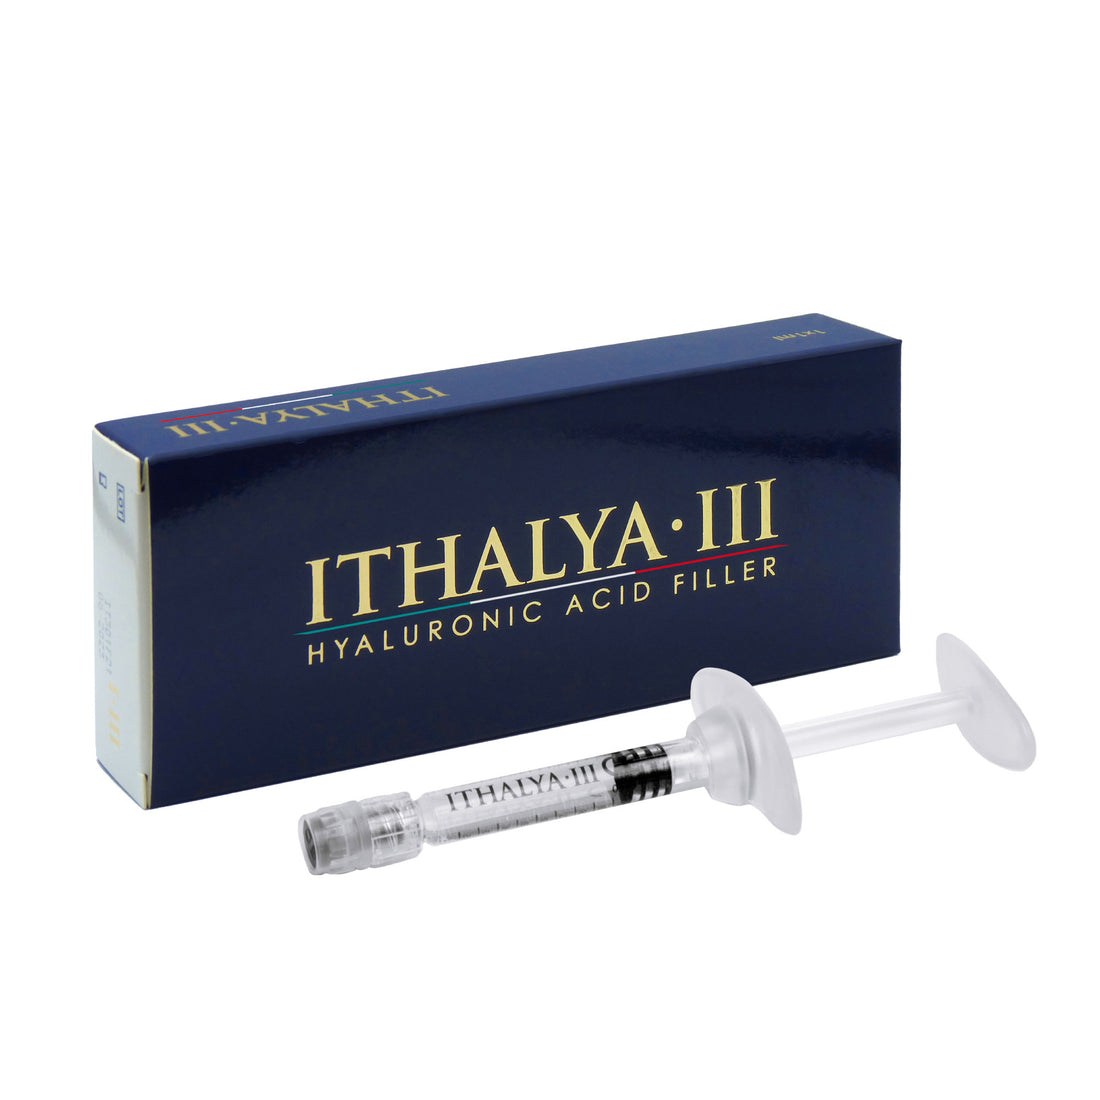 ITHALYA III - Filler Acido Ialuronico Reticolato - MONOPHASIC CROSSLINKED